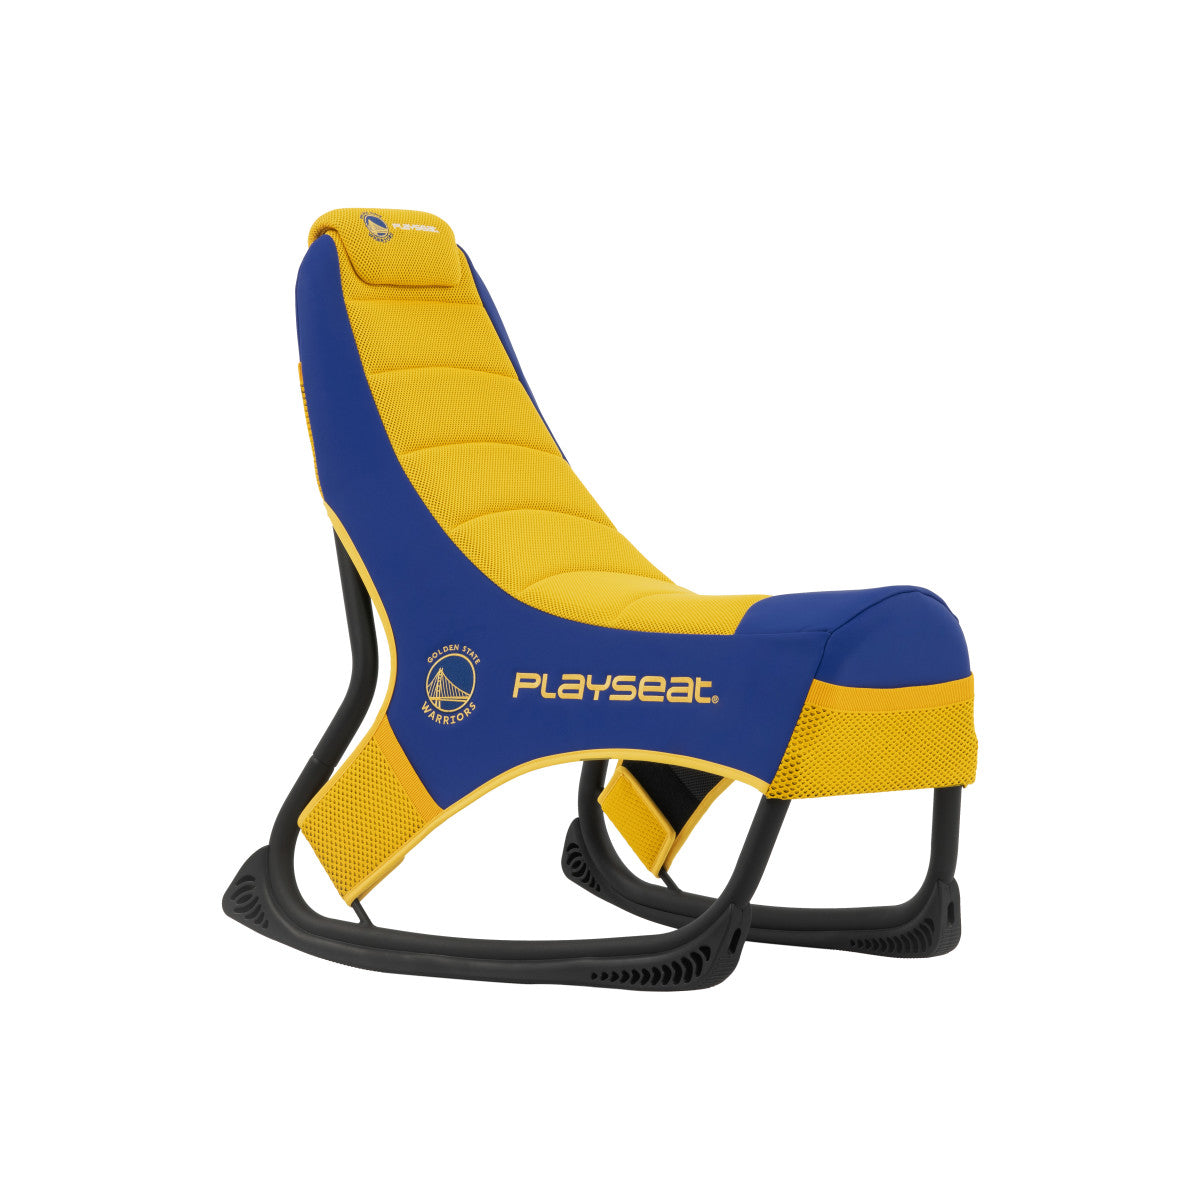 PLAYSEAT® CHAMP NBA Padded Seat - Blue/Yellow